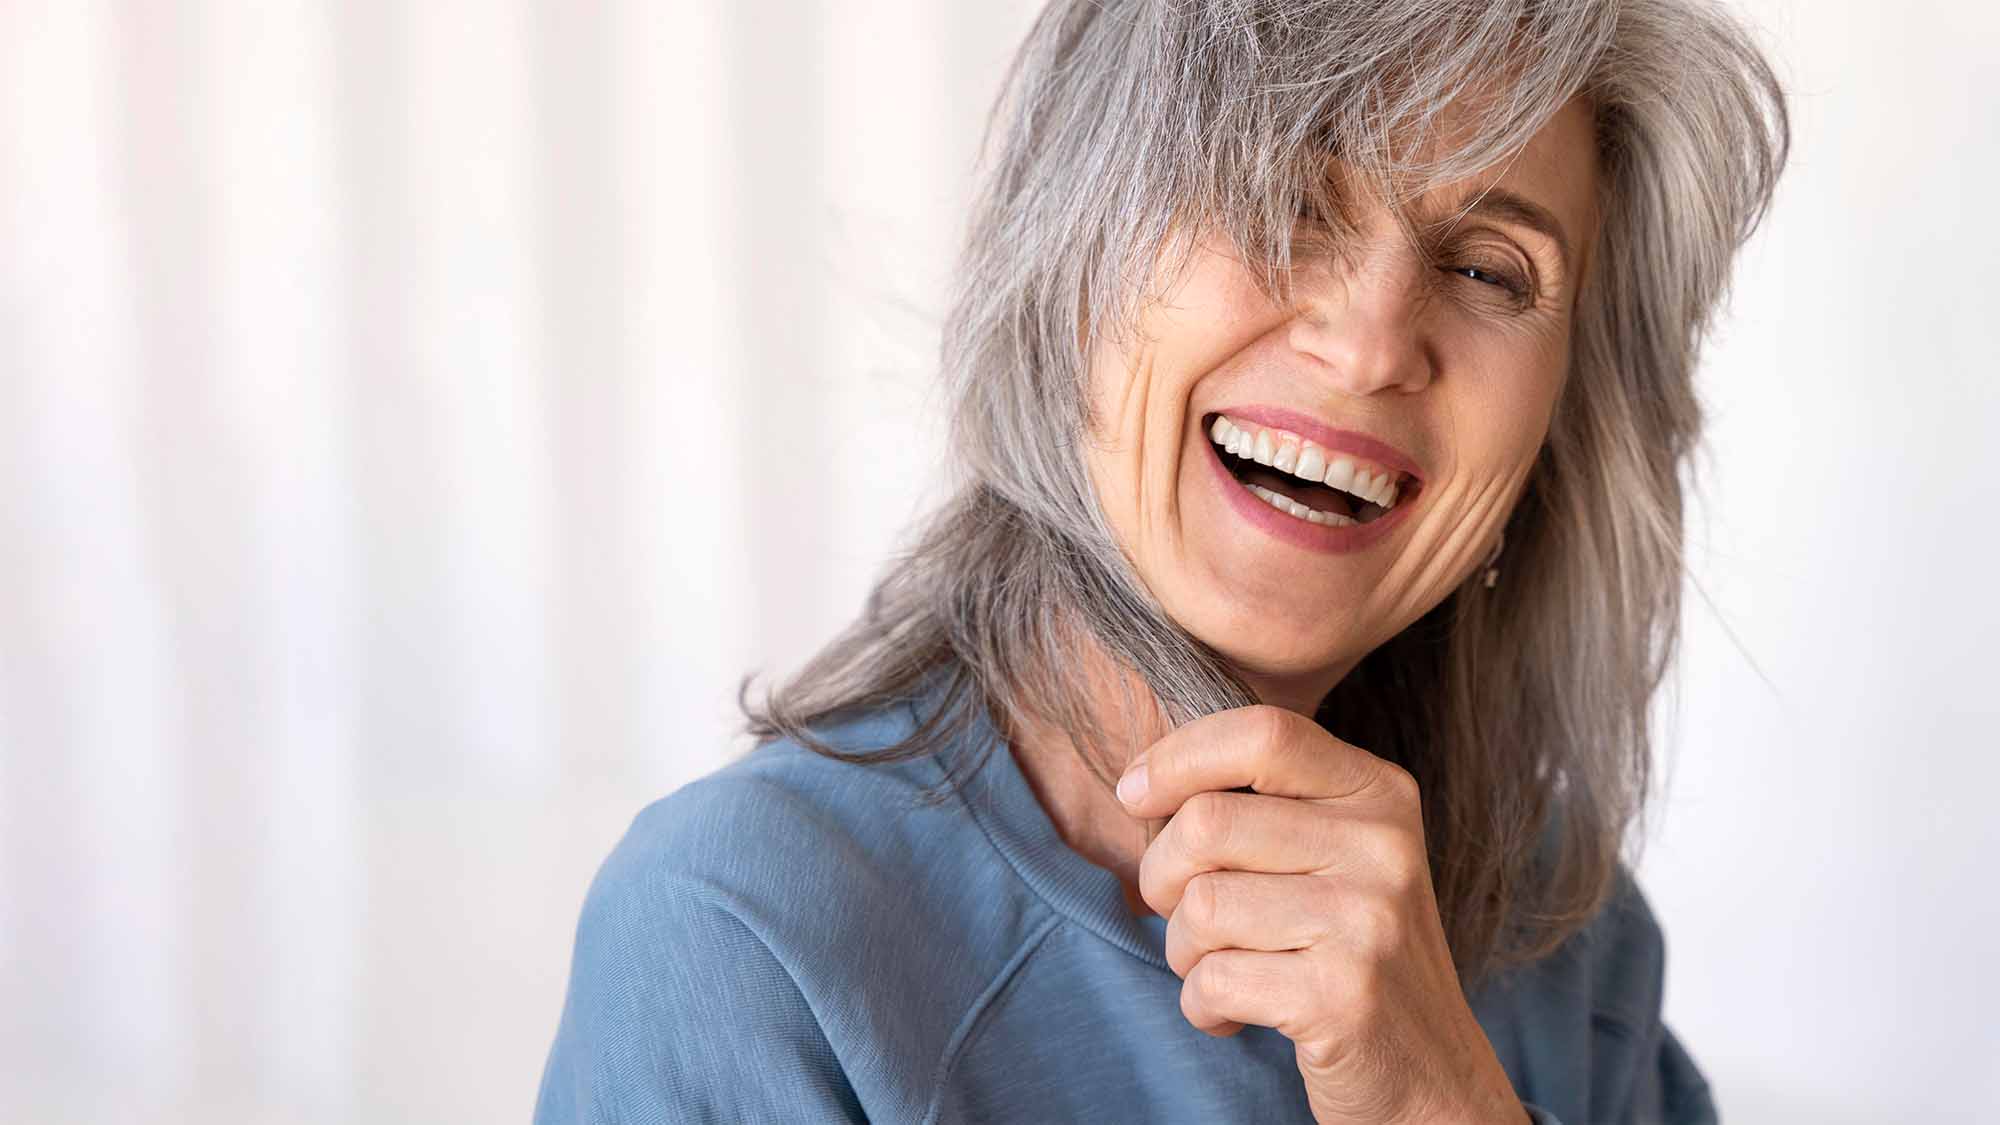 mujer sonriendo con implantes dentales cuidados